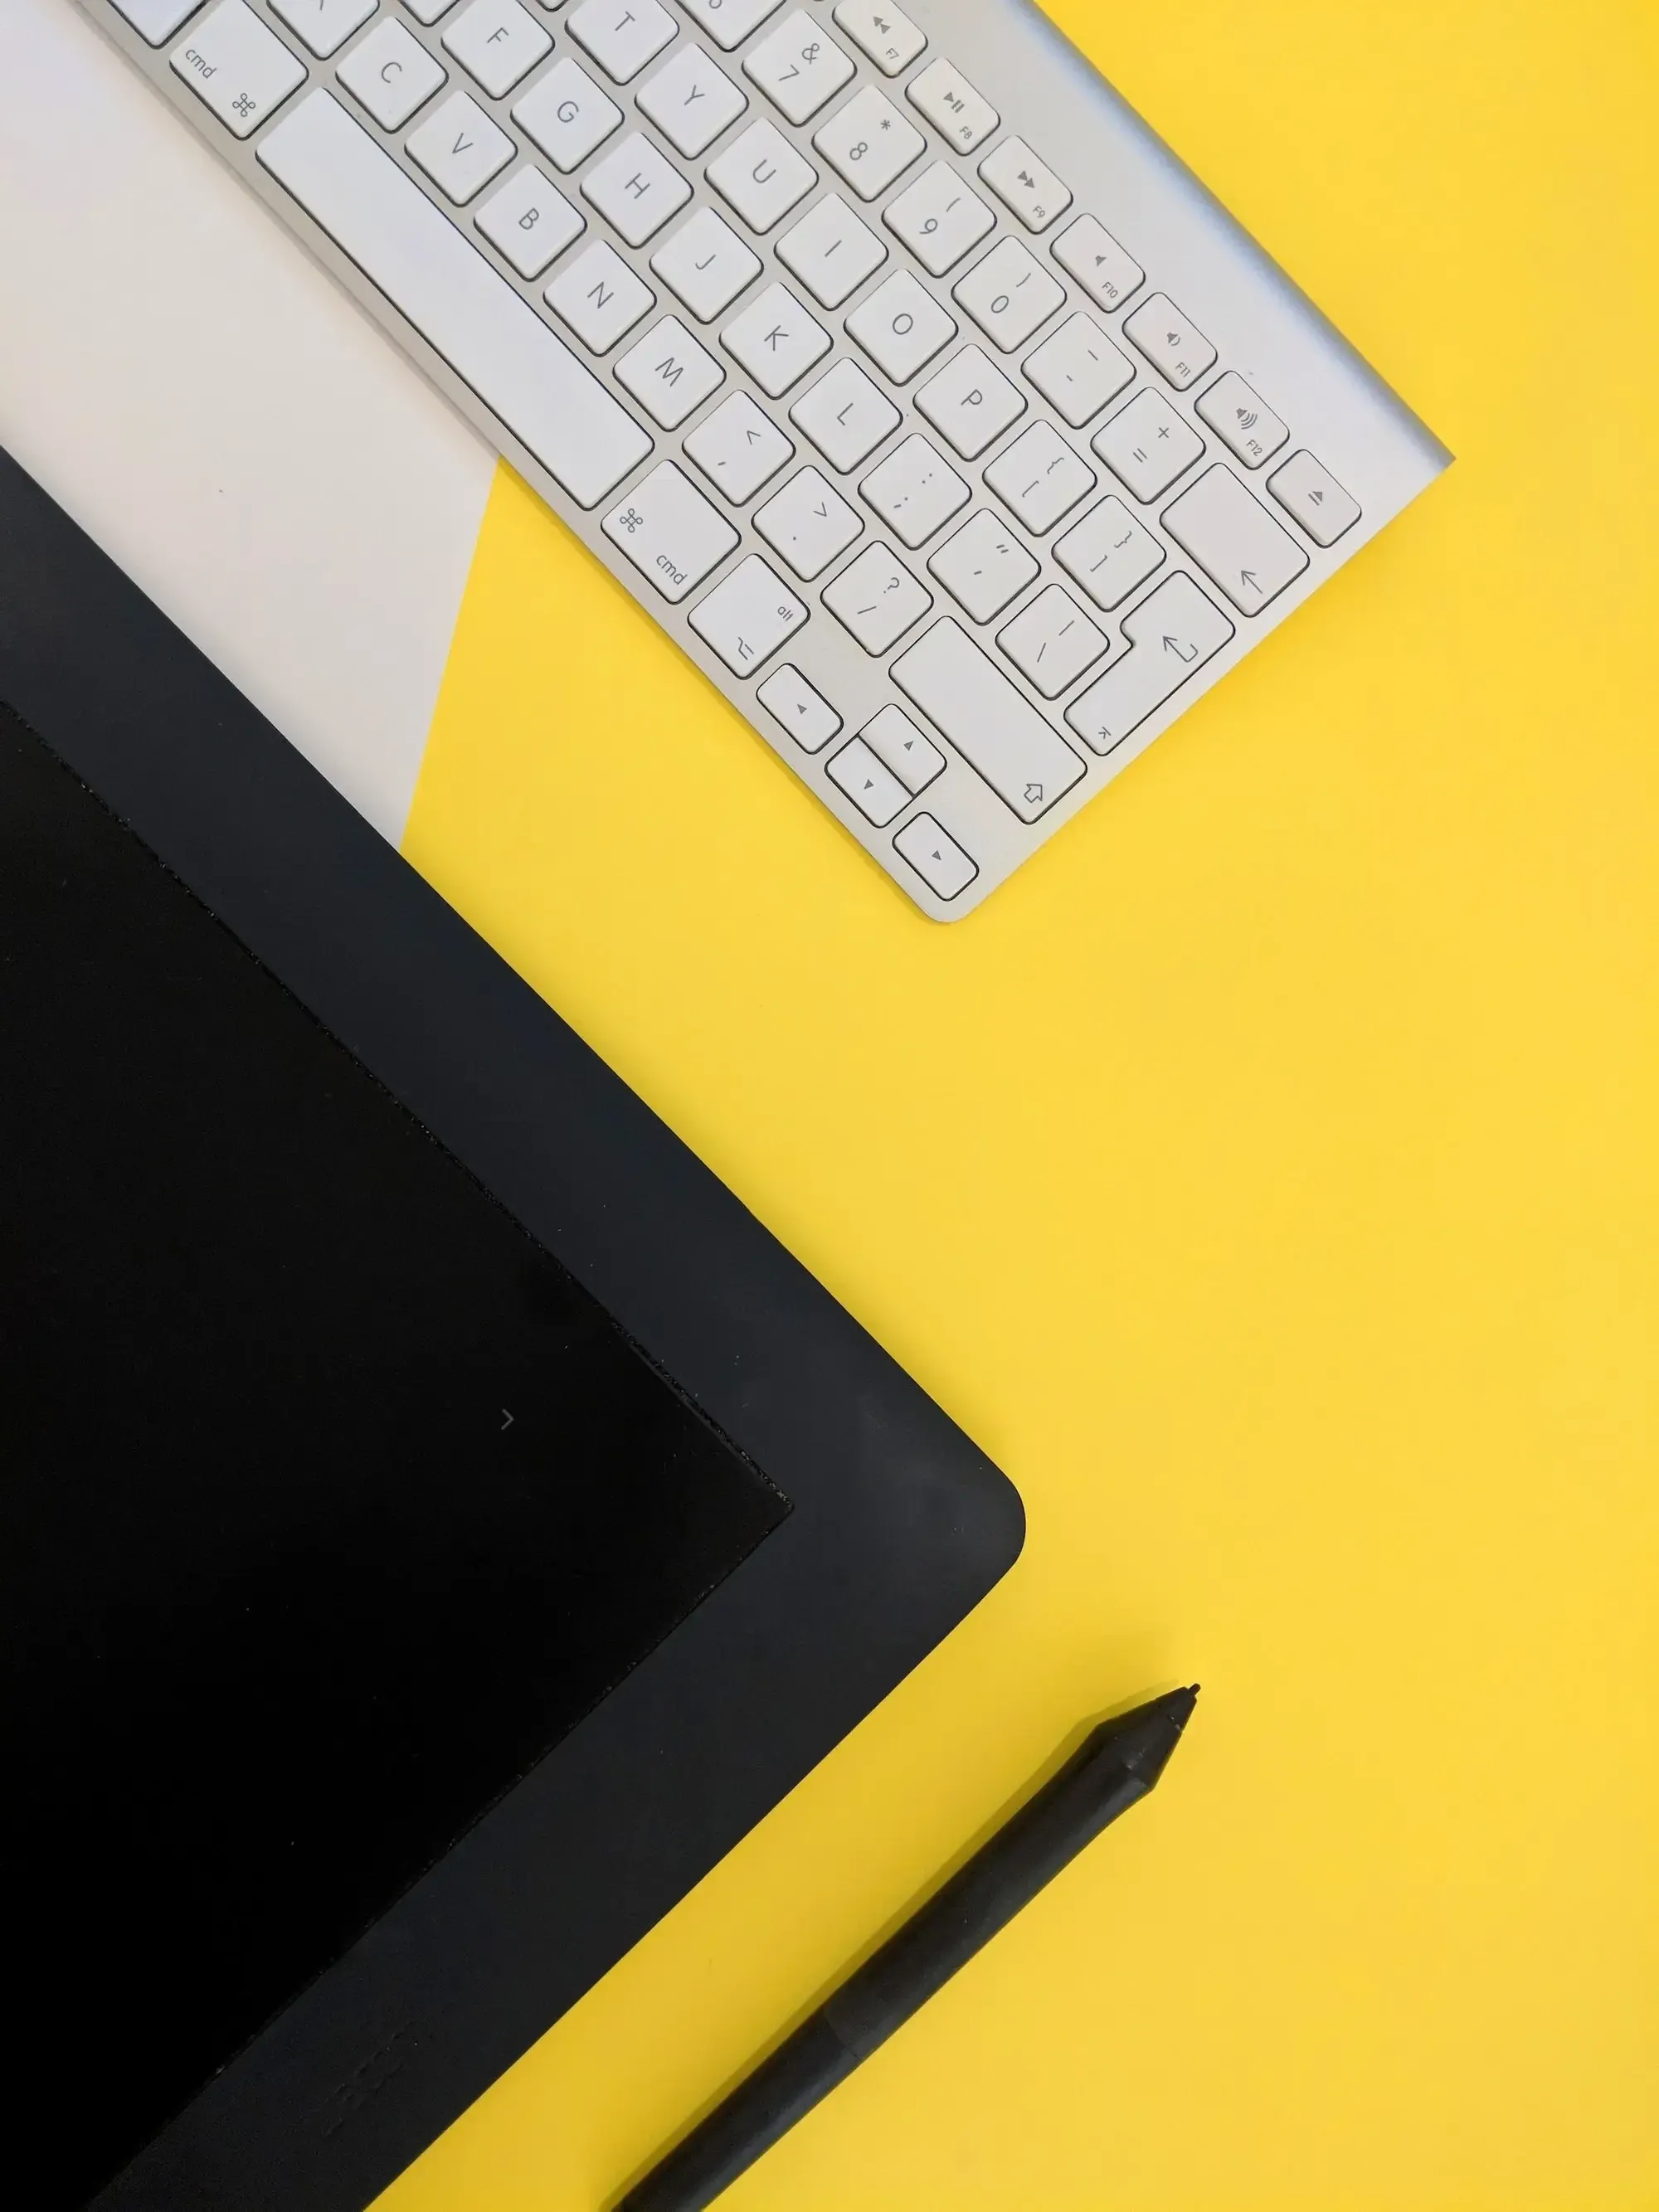 Schwarzes Tablet, schwarzer Stift und weiße Tastatur auf gelbem Hintergrund. 